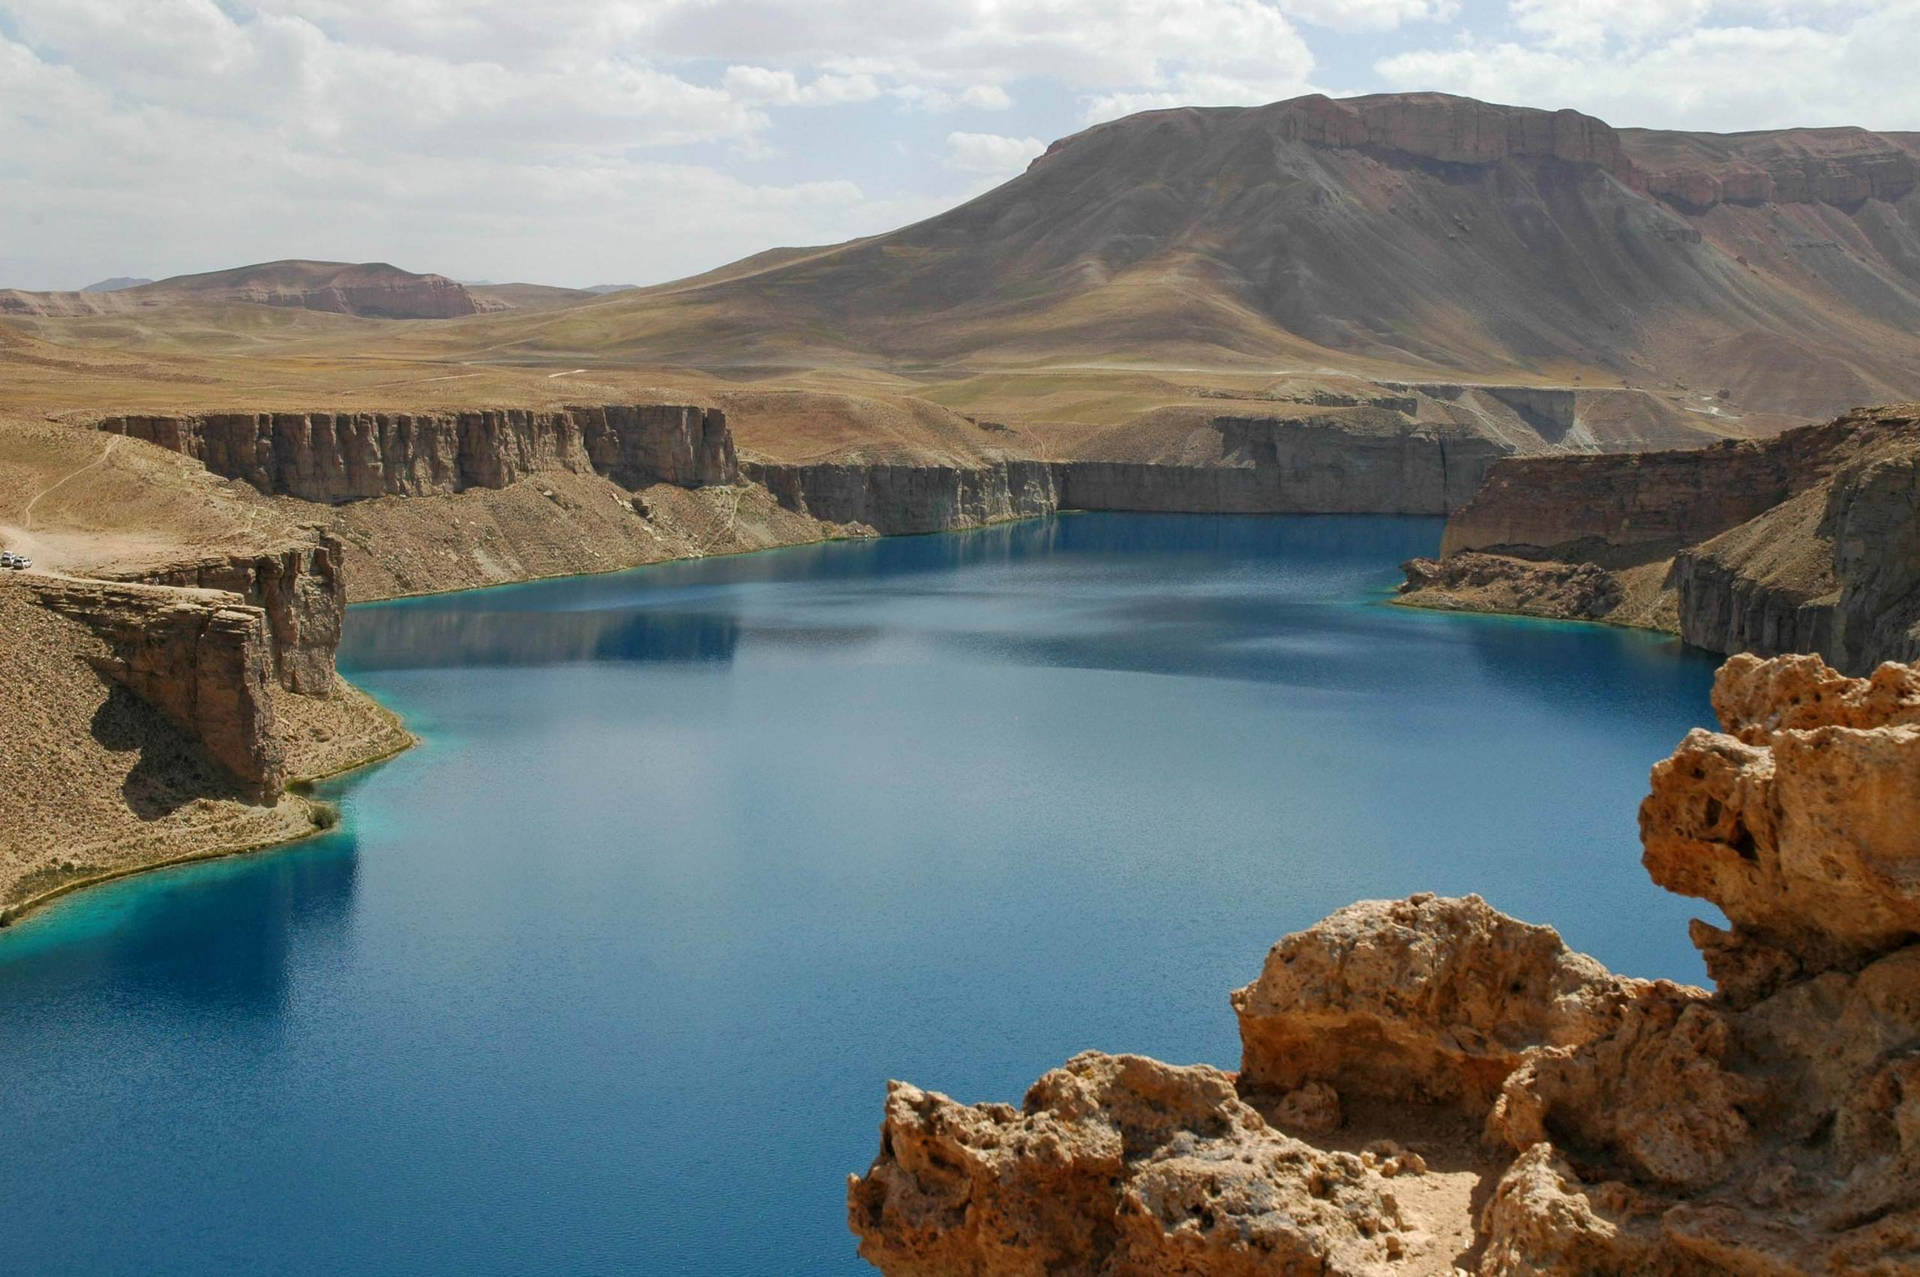 Afghanistan Band-e Amir National Park